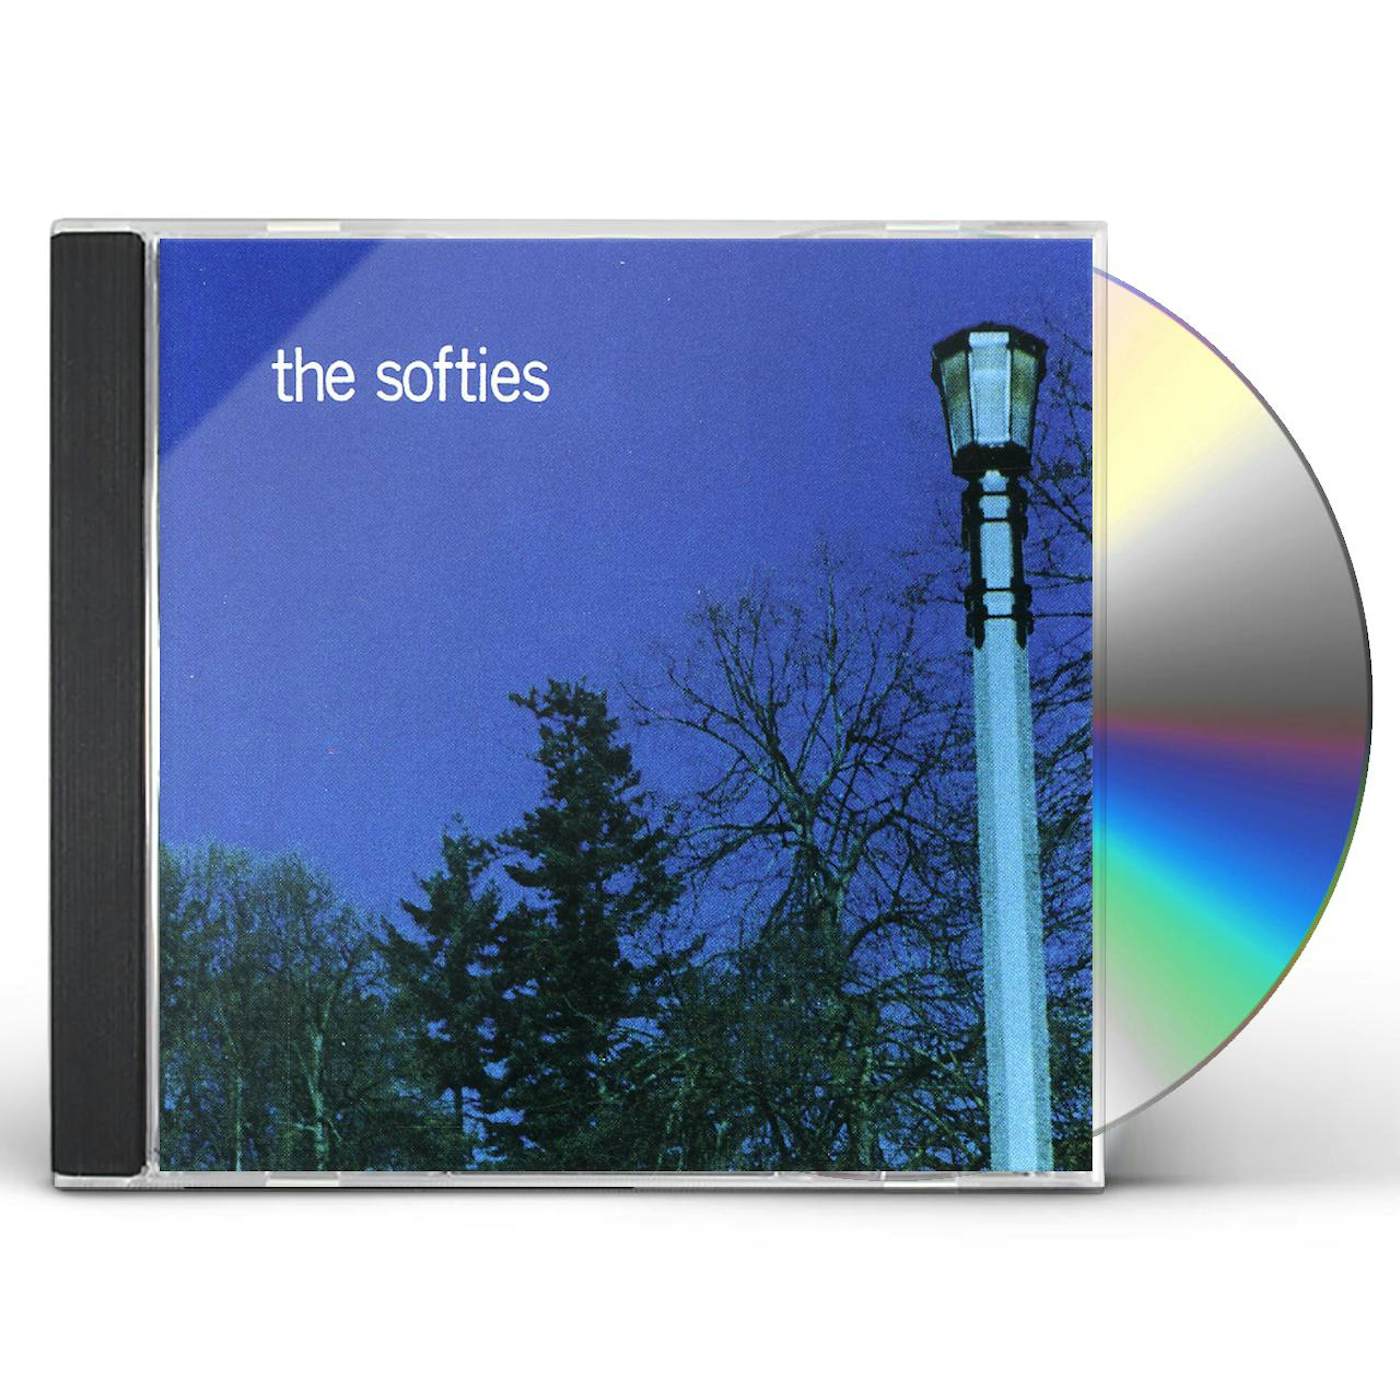 The Softies CD